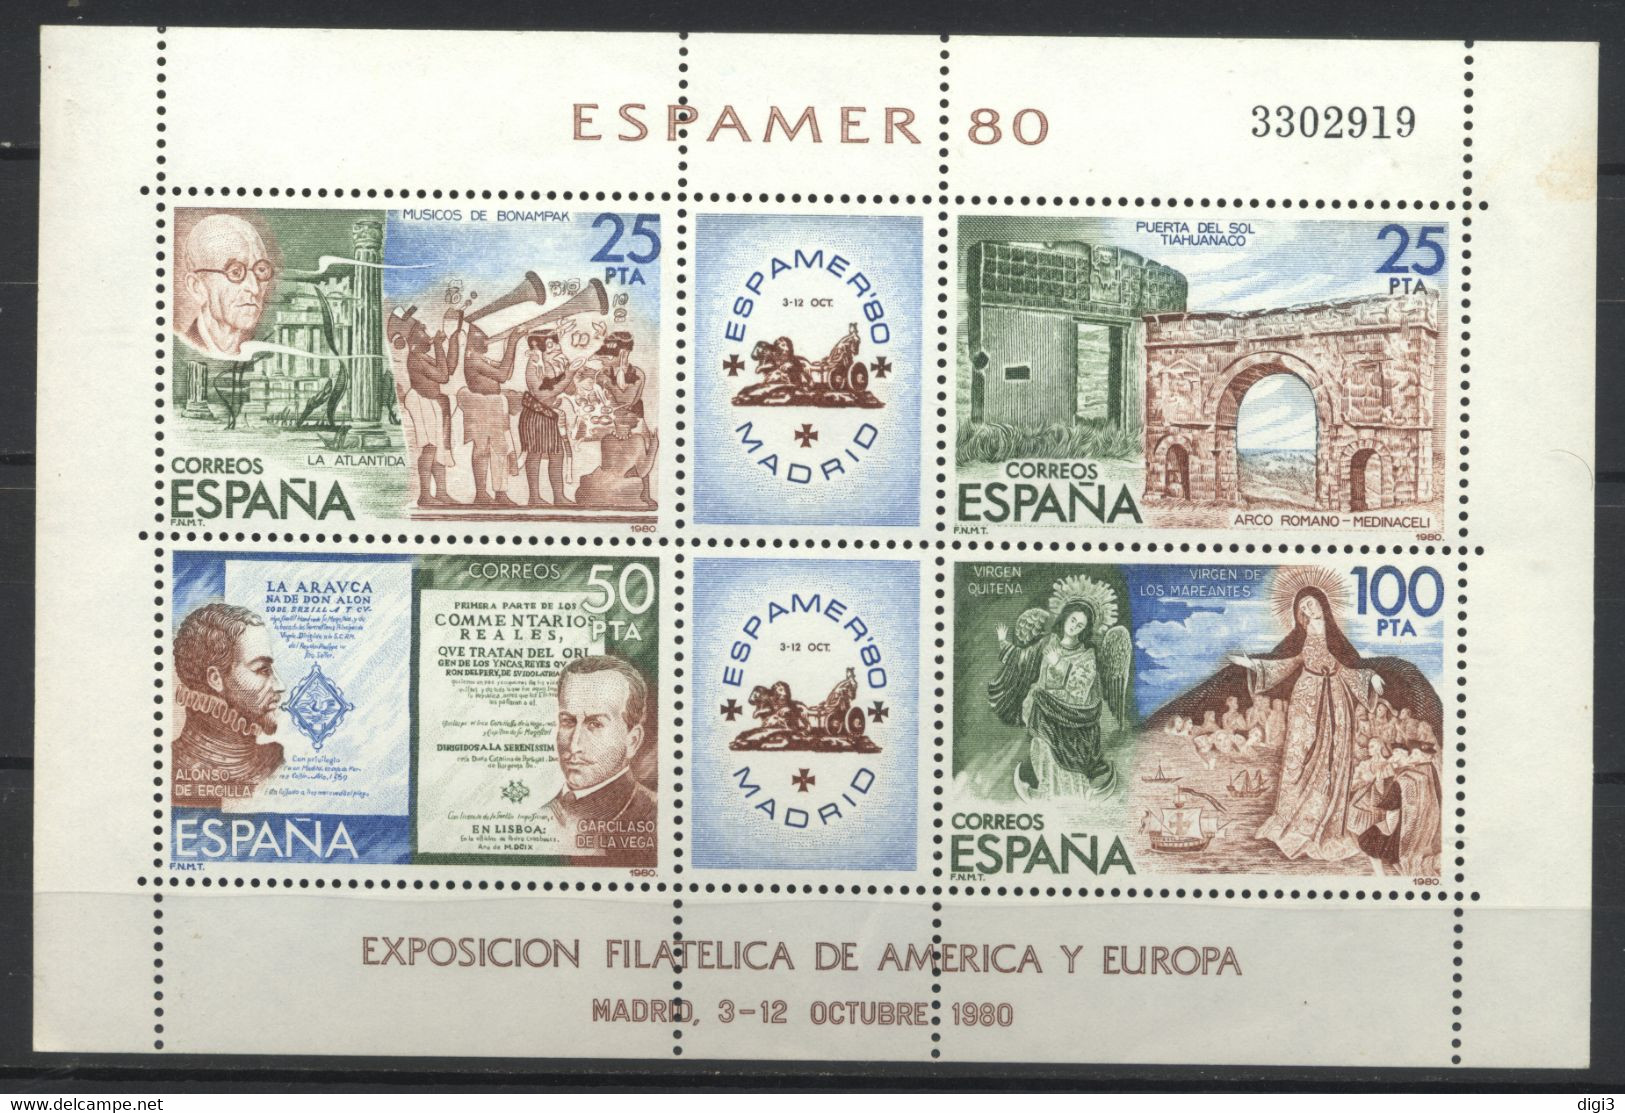 España, 1980, Exposiciòn Filatélica De América Y Europa, ESPAMER 80, Hojita, MNH** - Commemorative Panes